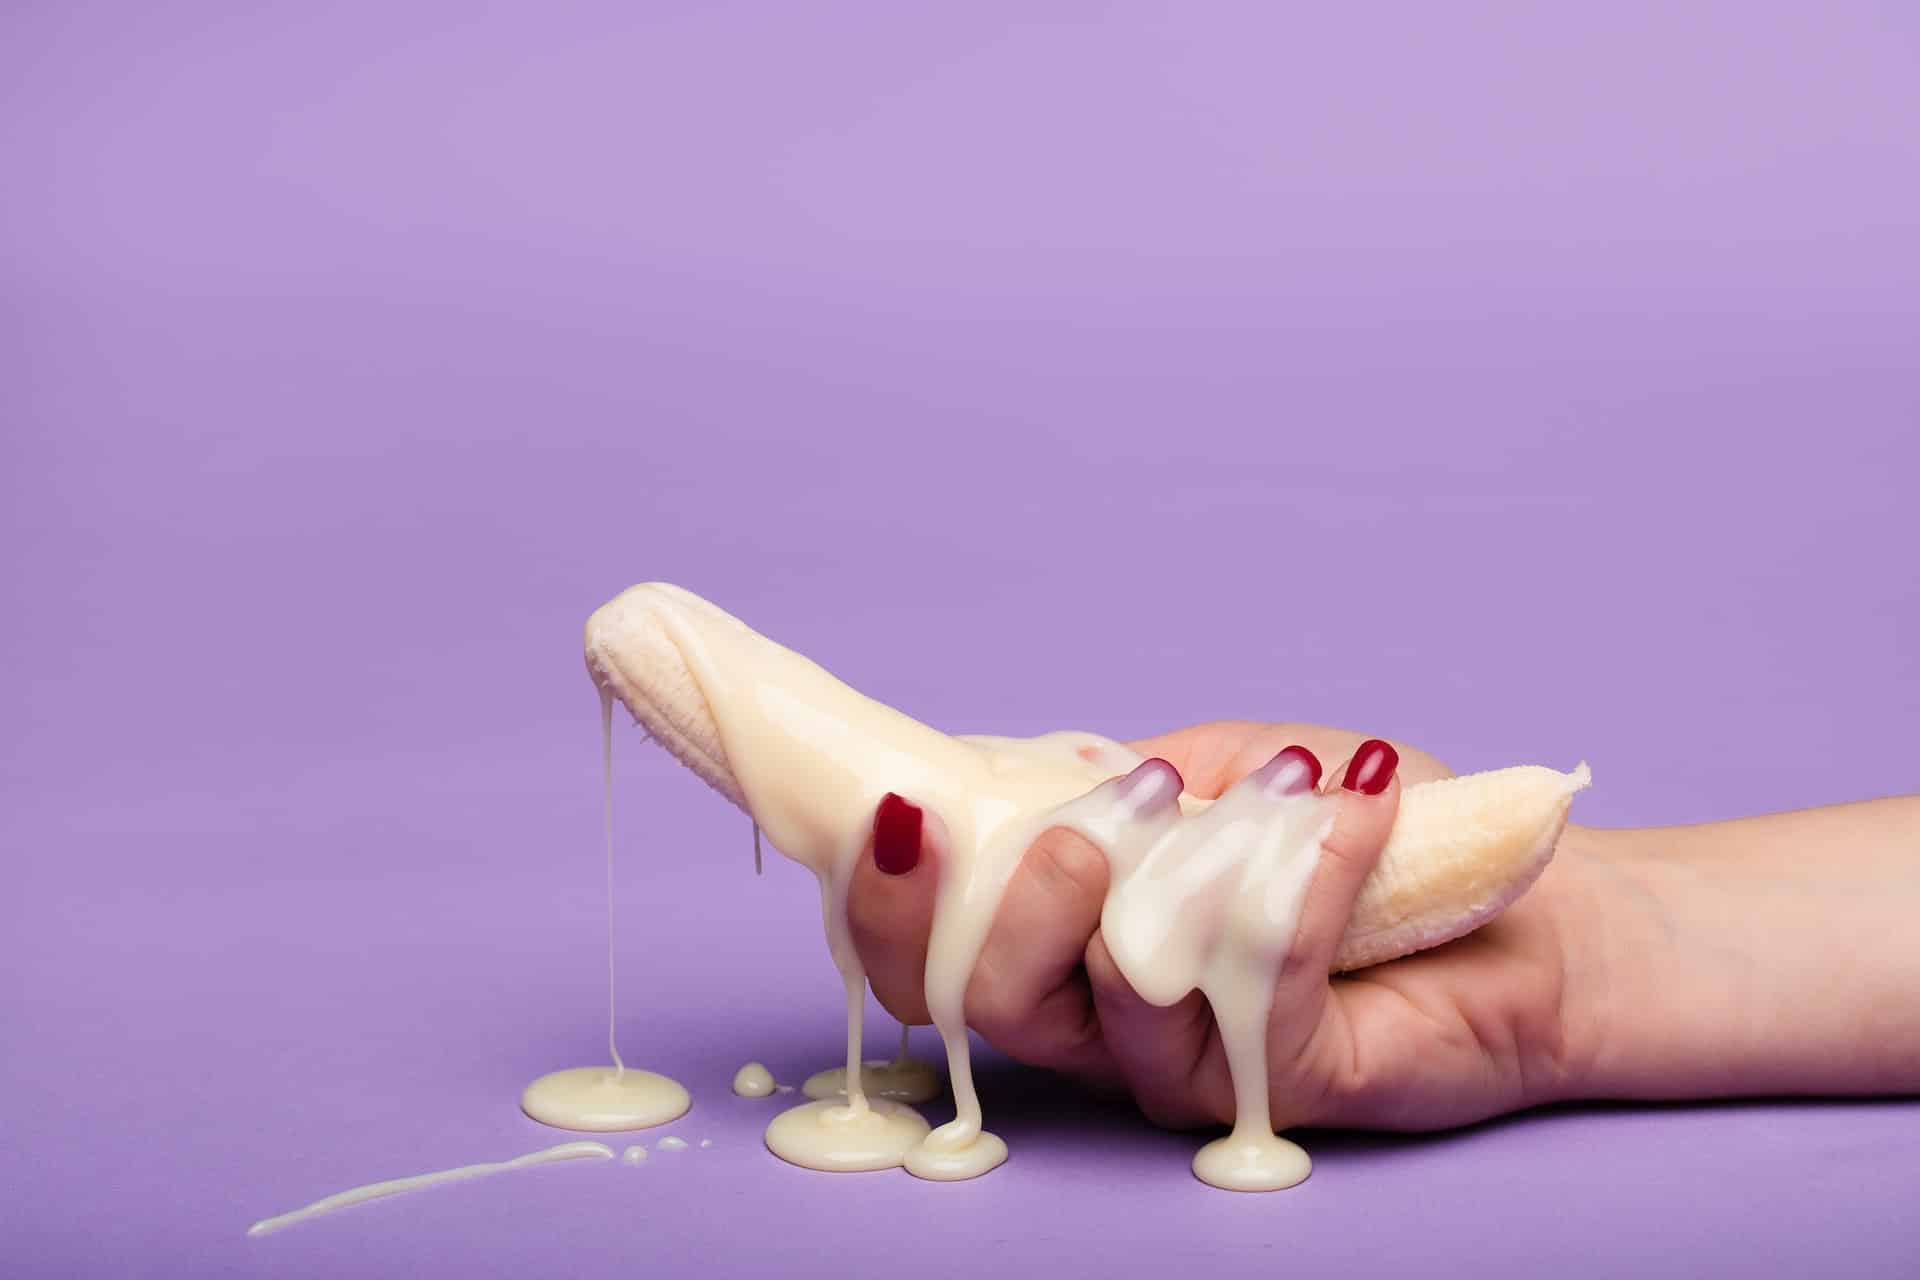 Plátano pelado lleno de leche condensada y agarrado por una mano femenina con las uñas pintadas de rojo